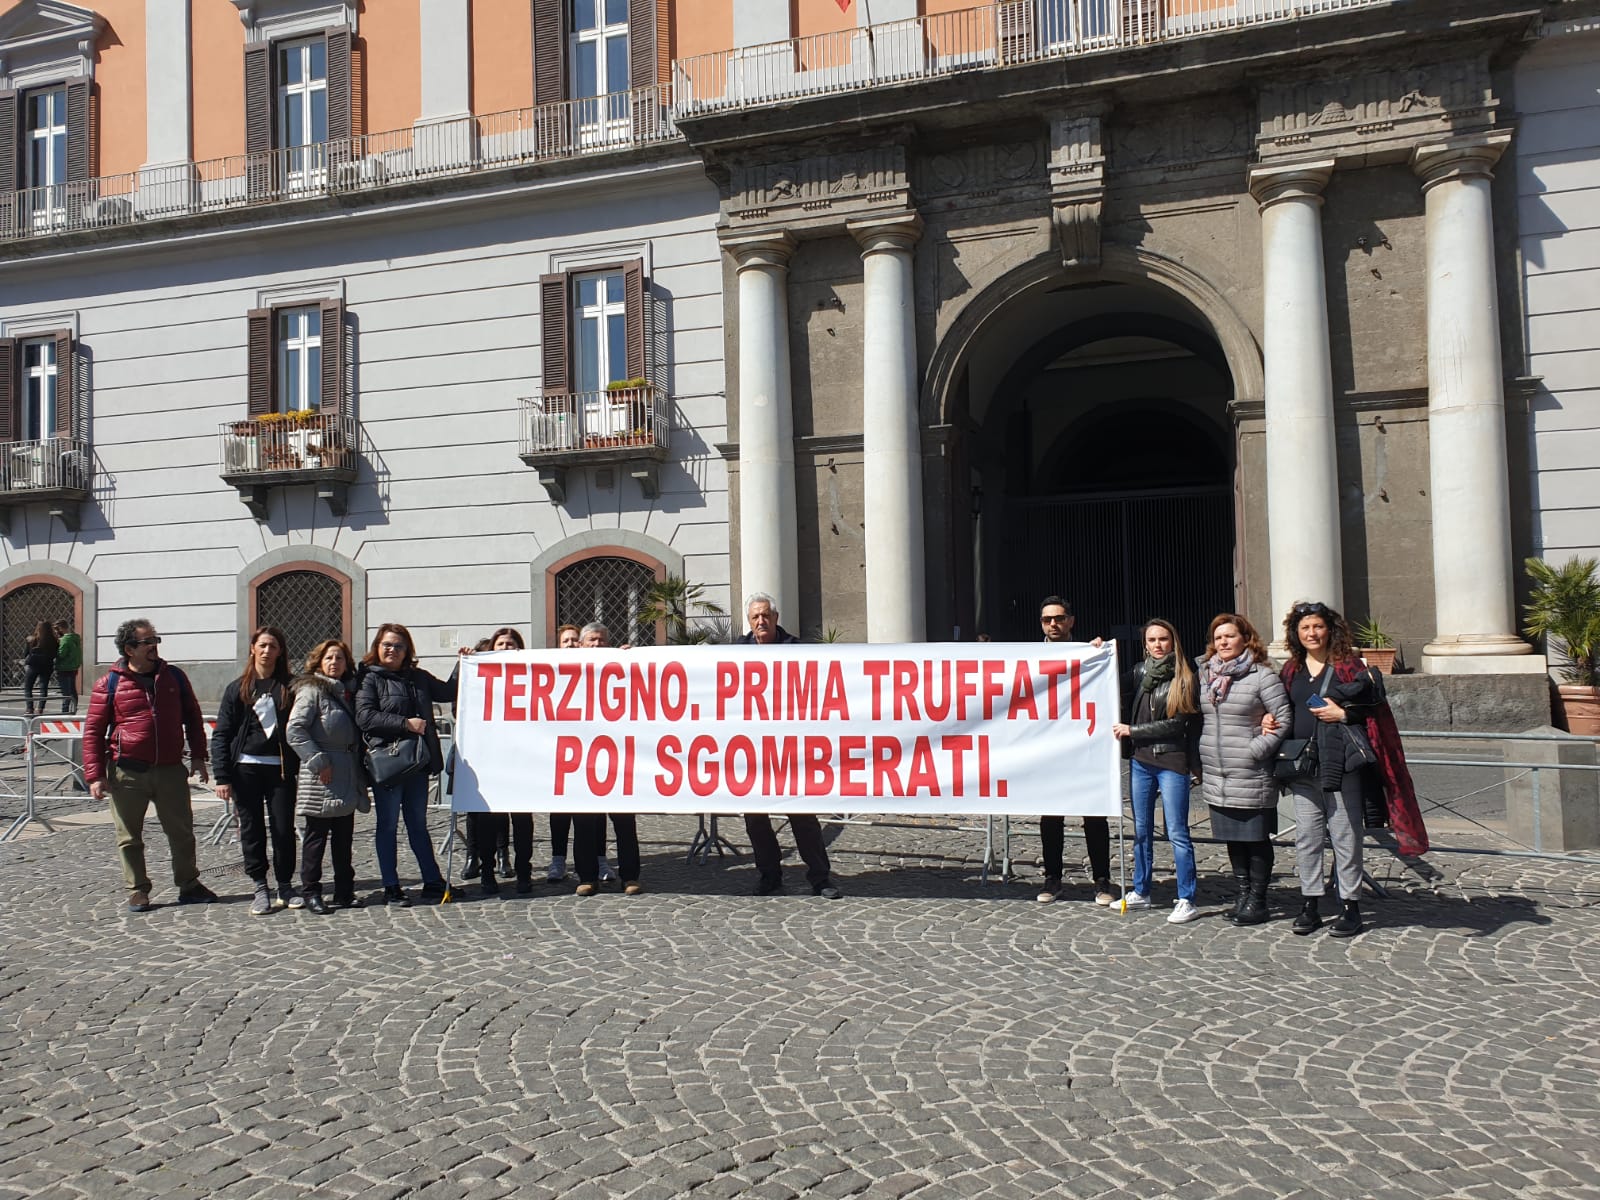 Abbattimento case a Terzigno, gli abitanti davanti alla sede della Regione Campania: “Da qui non ci muoviamo”